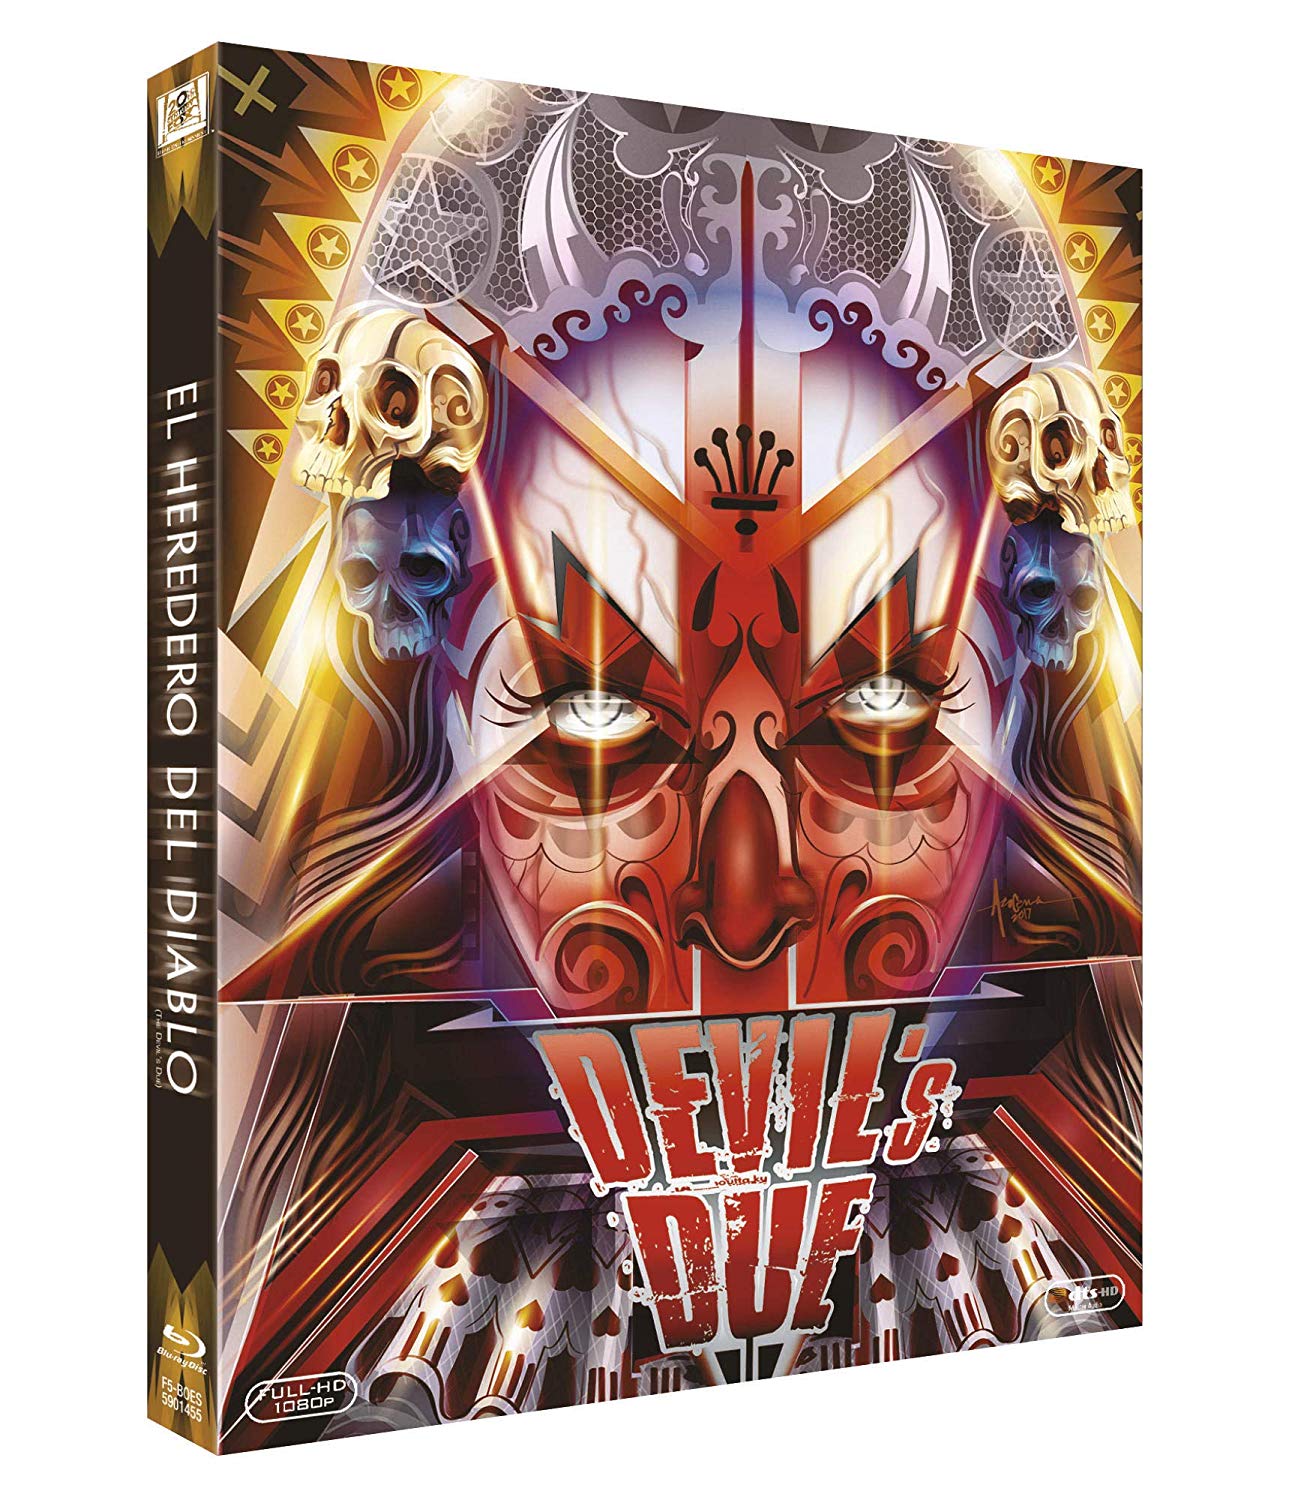 [블루레이] 악마의 탄생 - 할로윈 에디션 (Blu-ray : Devil's Due) (한글자막)